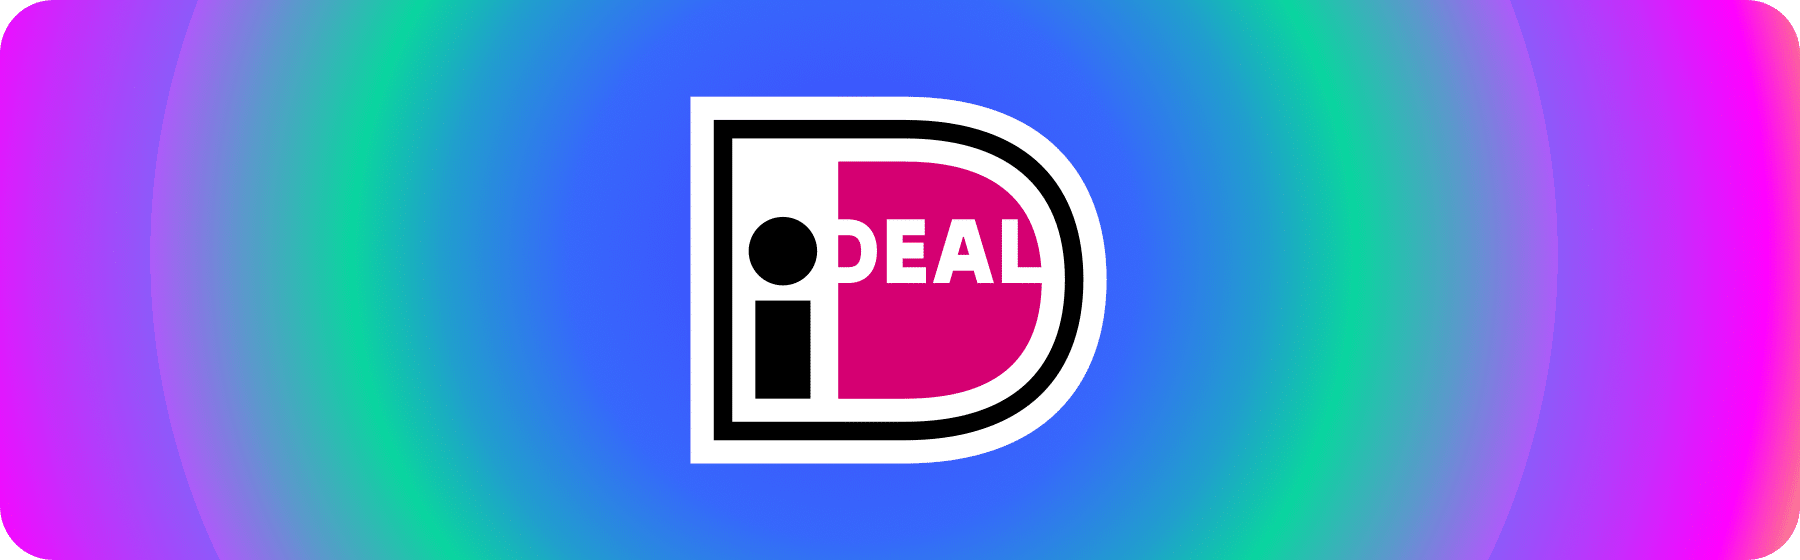 logo voor iDEAL als betaalmethode